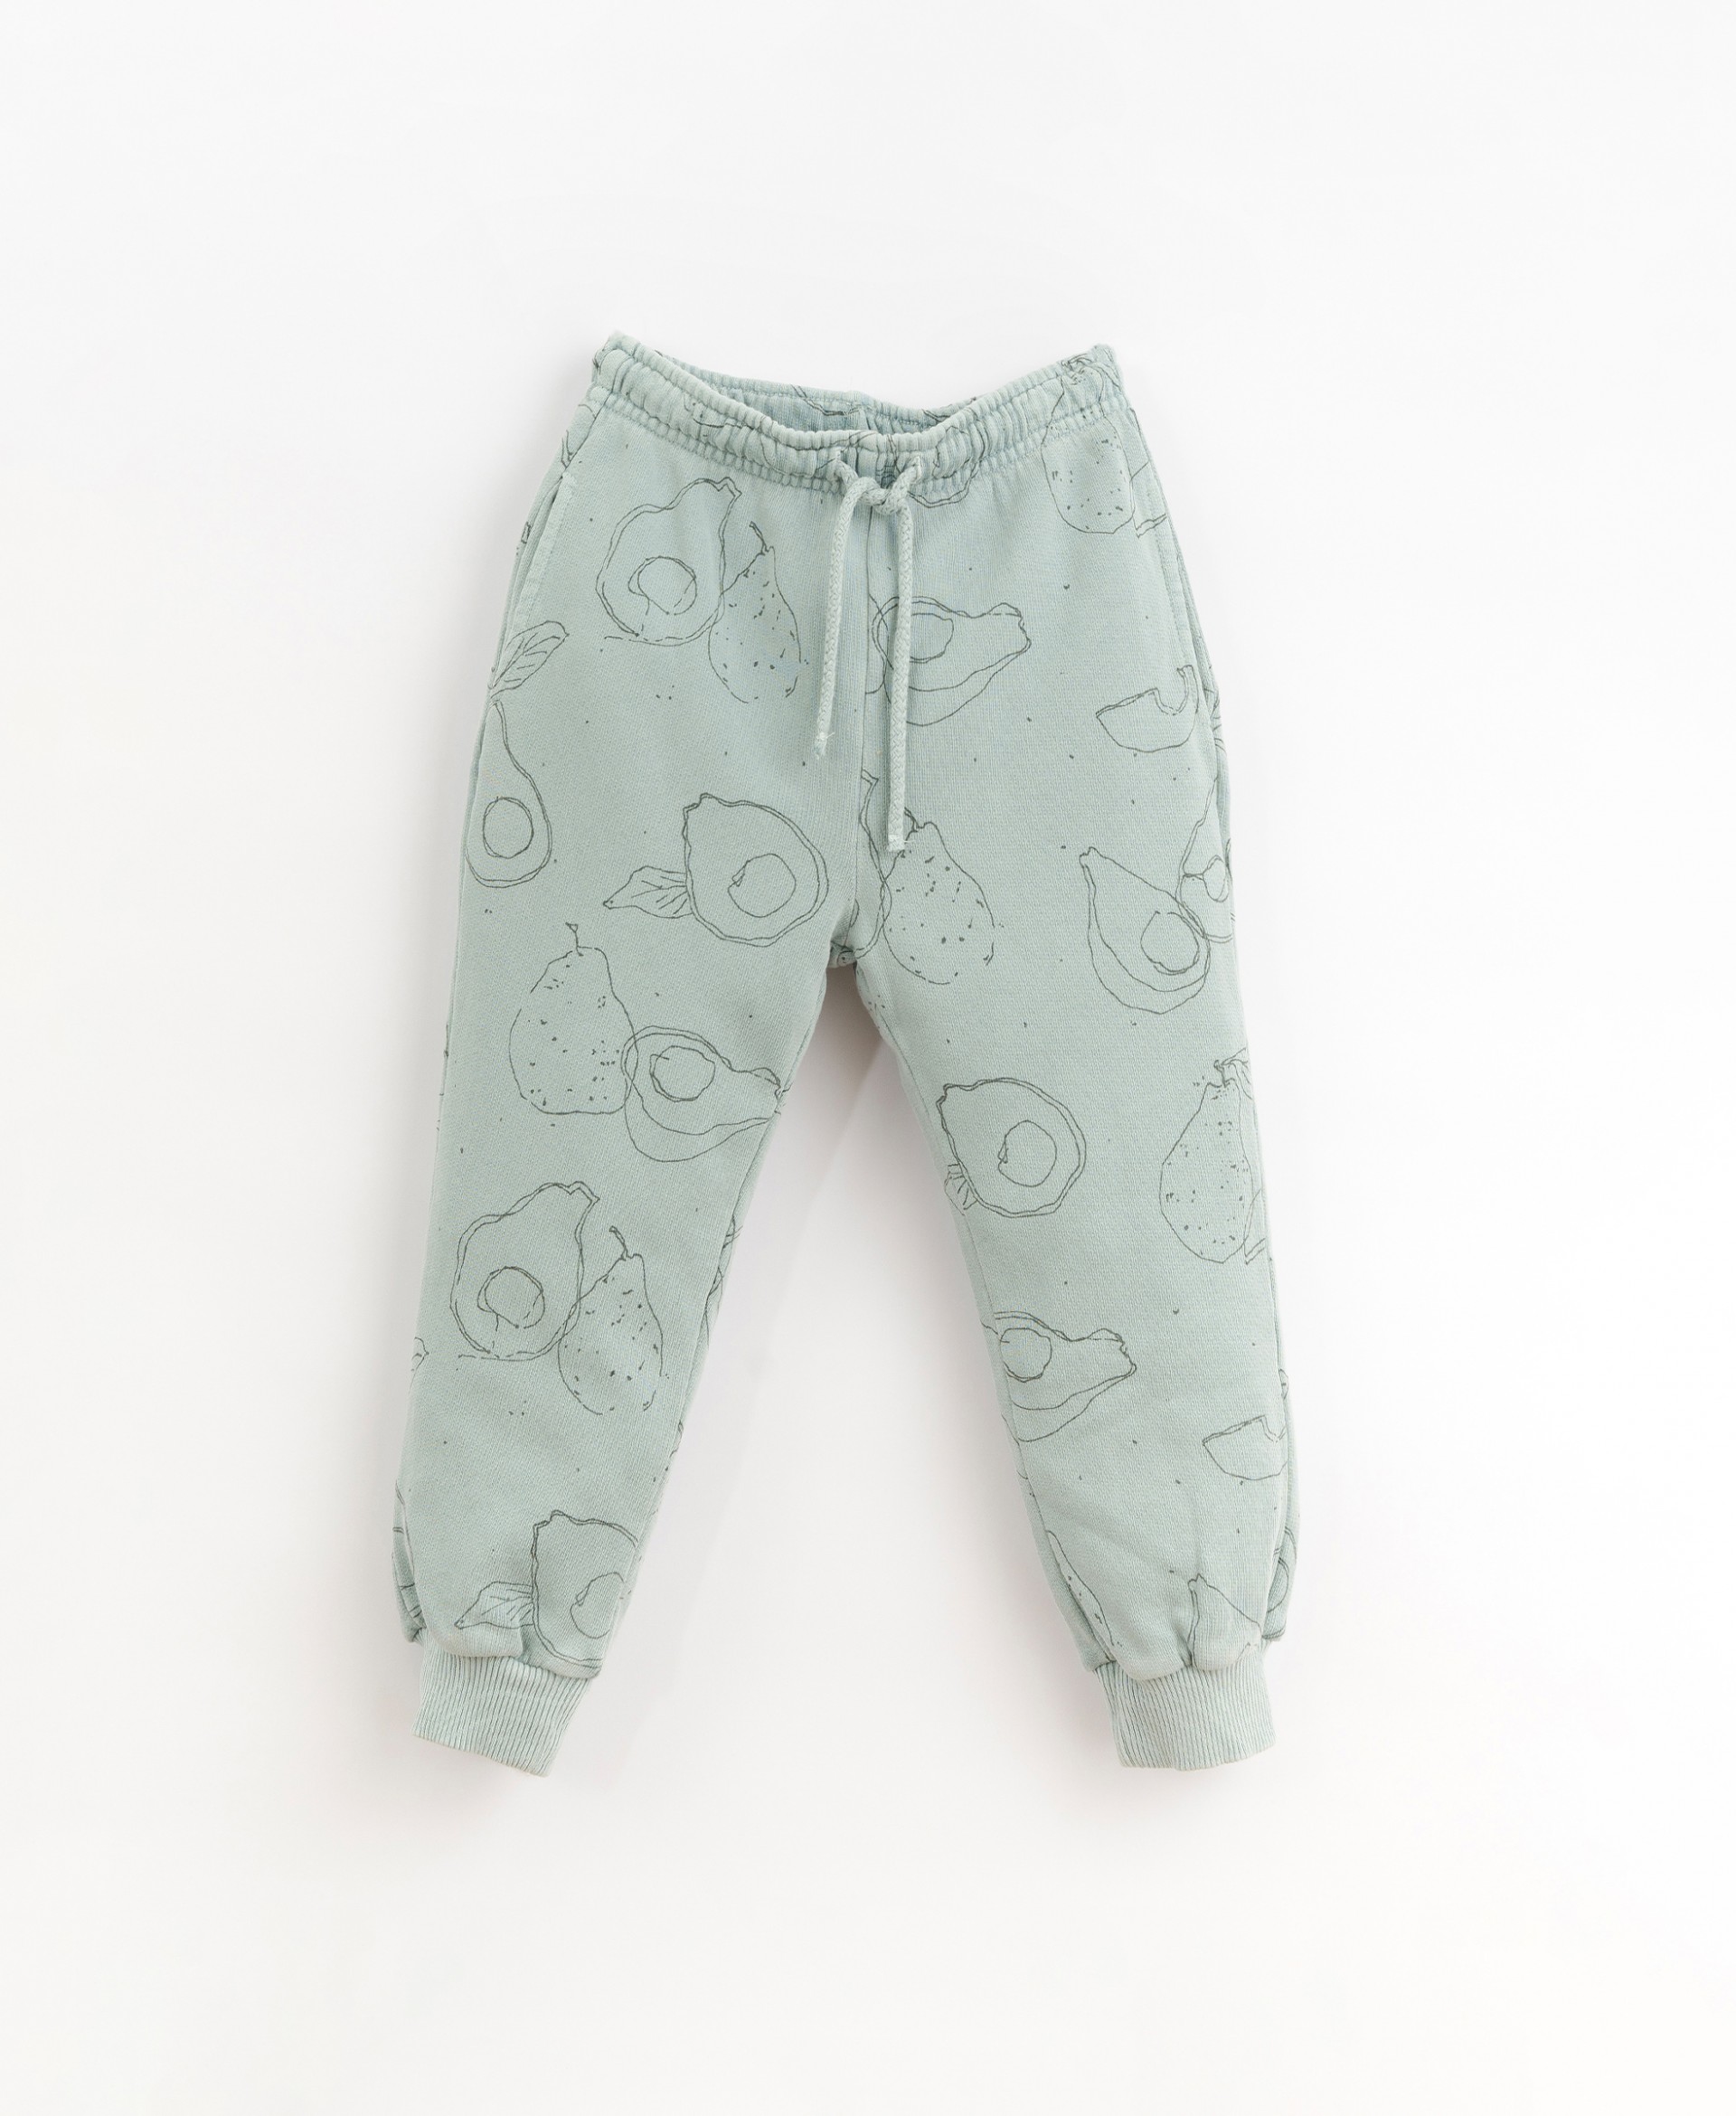 Pantaloni con immagini di avocado| Organic Care